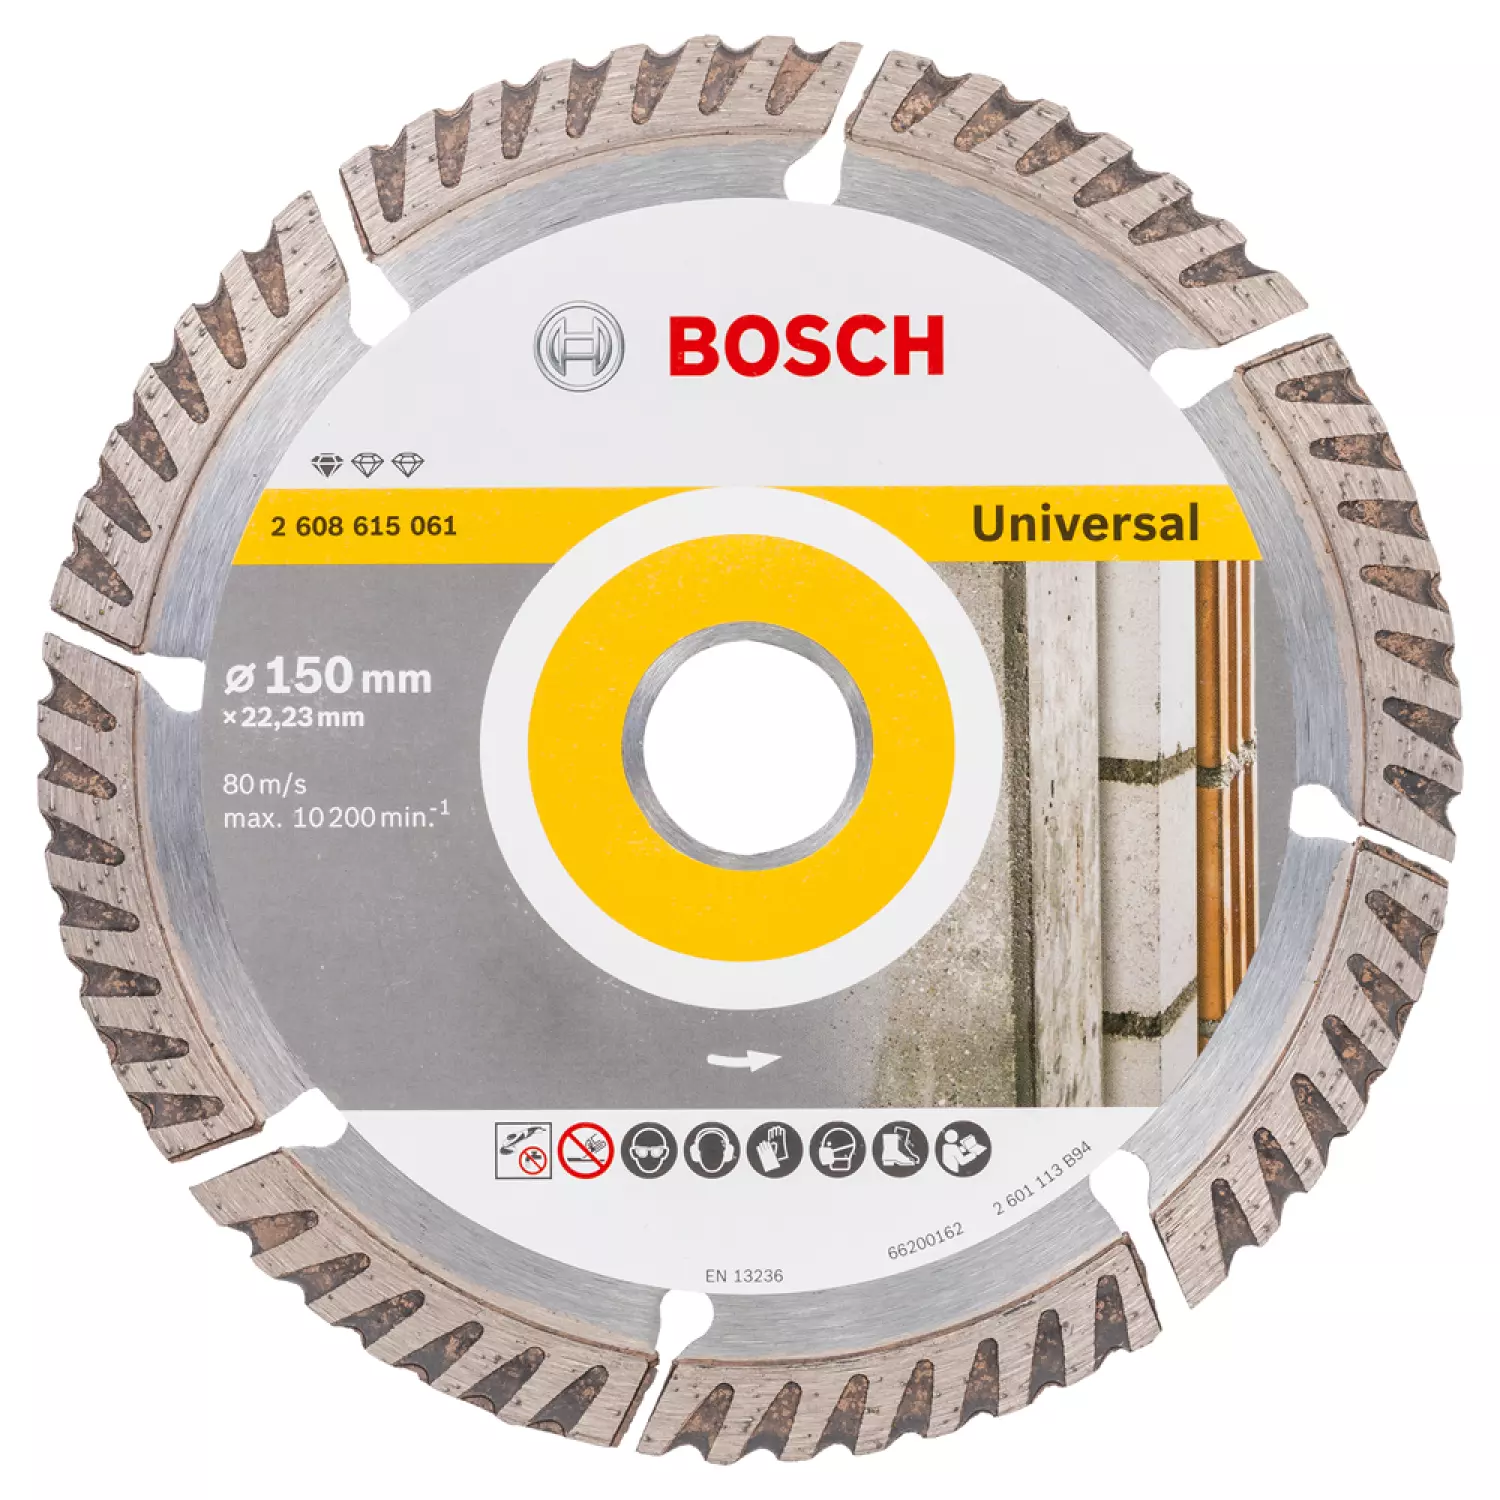 Bosch 2608615061 Diamantdoorslijpschijf - 150 x 22,23mm - universeel-image